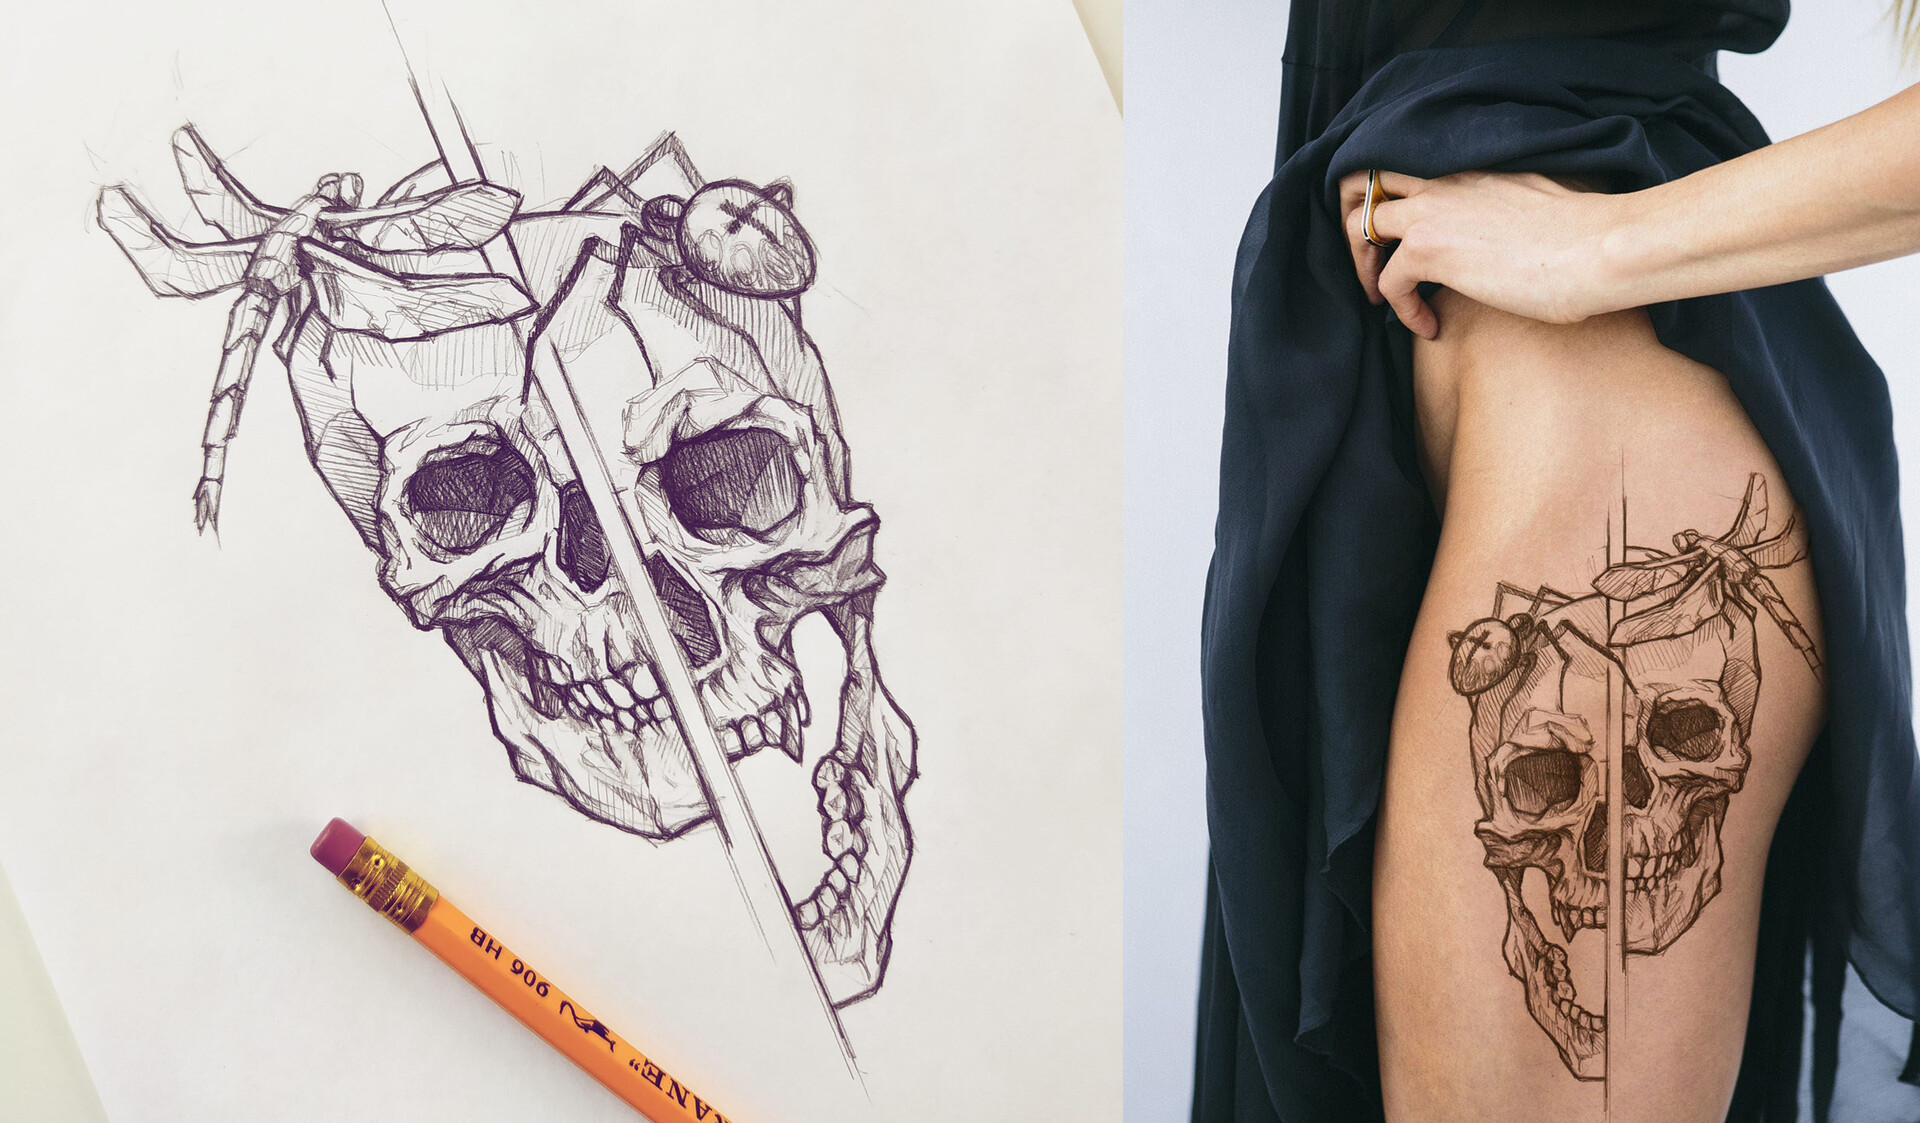 Art Surreal Skull Tattoo Hand Pencil Stock Illustration 672632464   Shutterstock